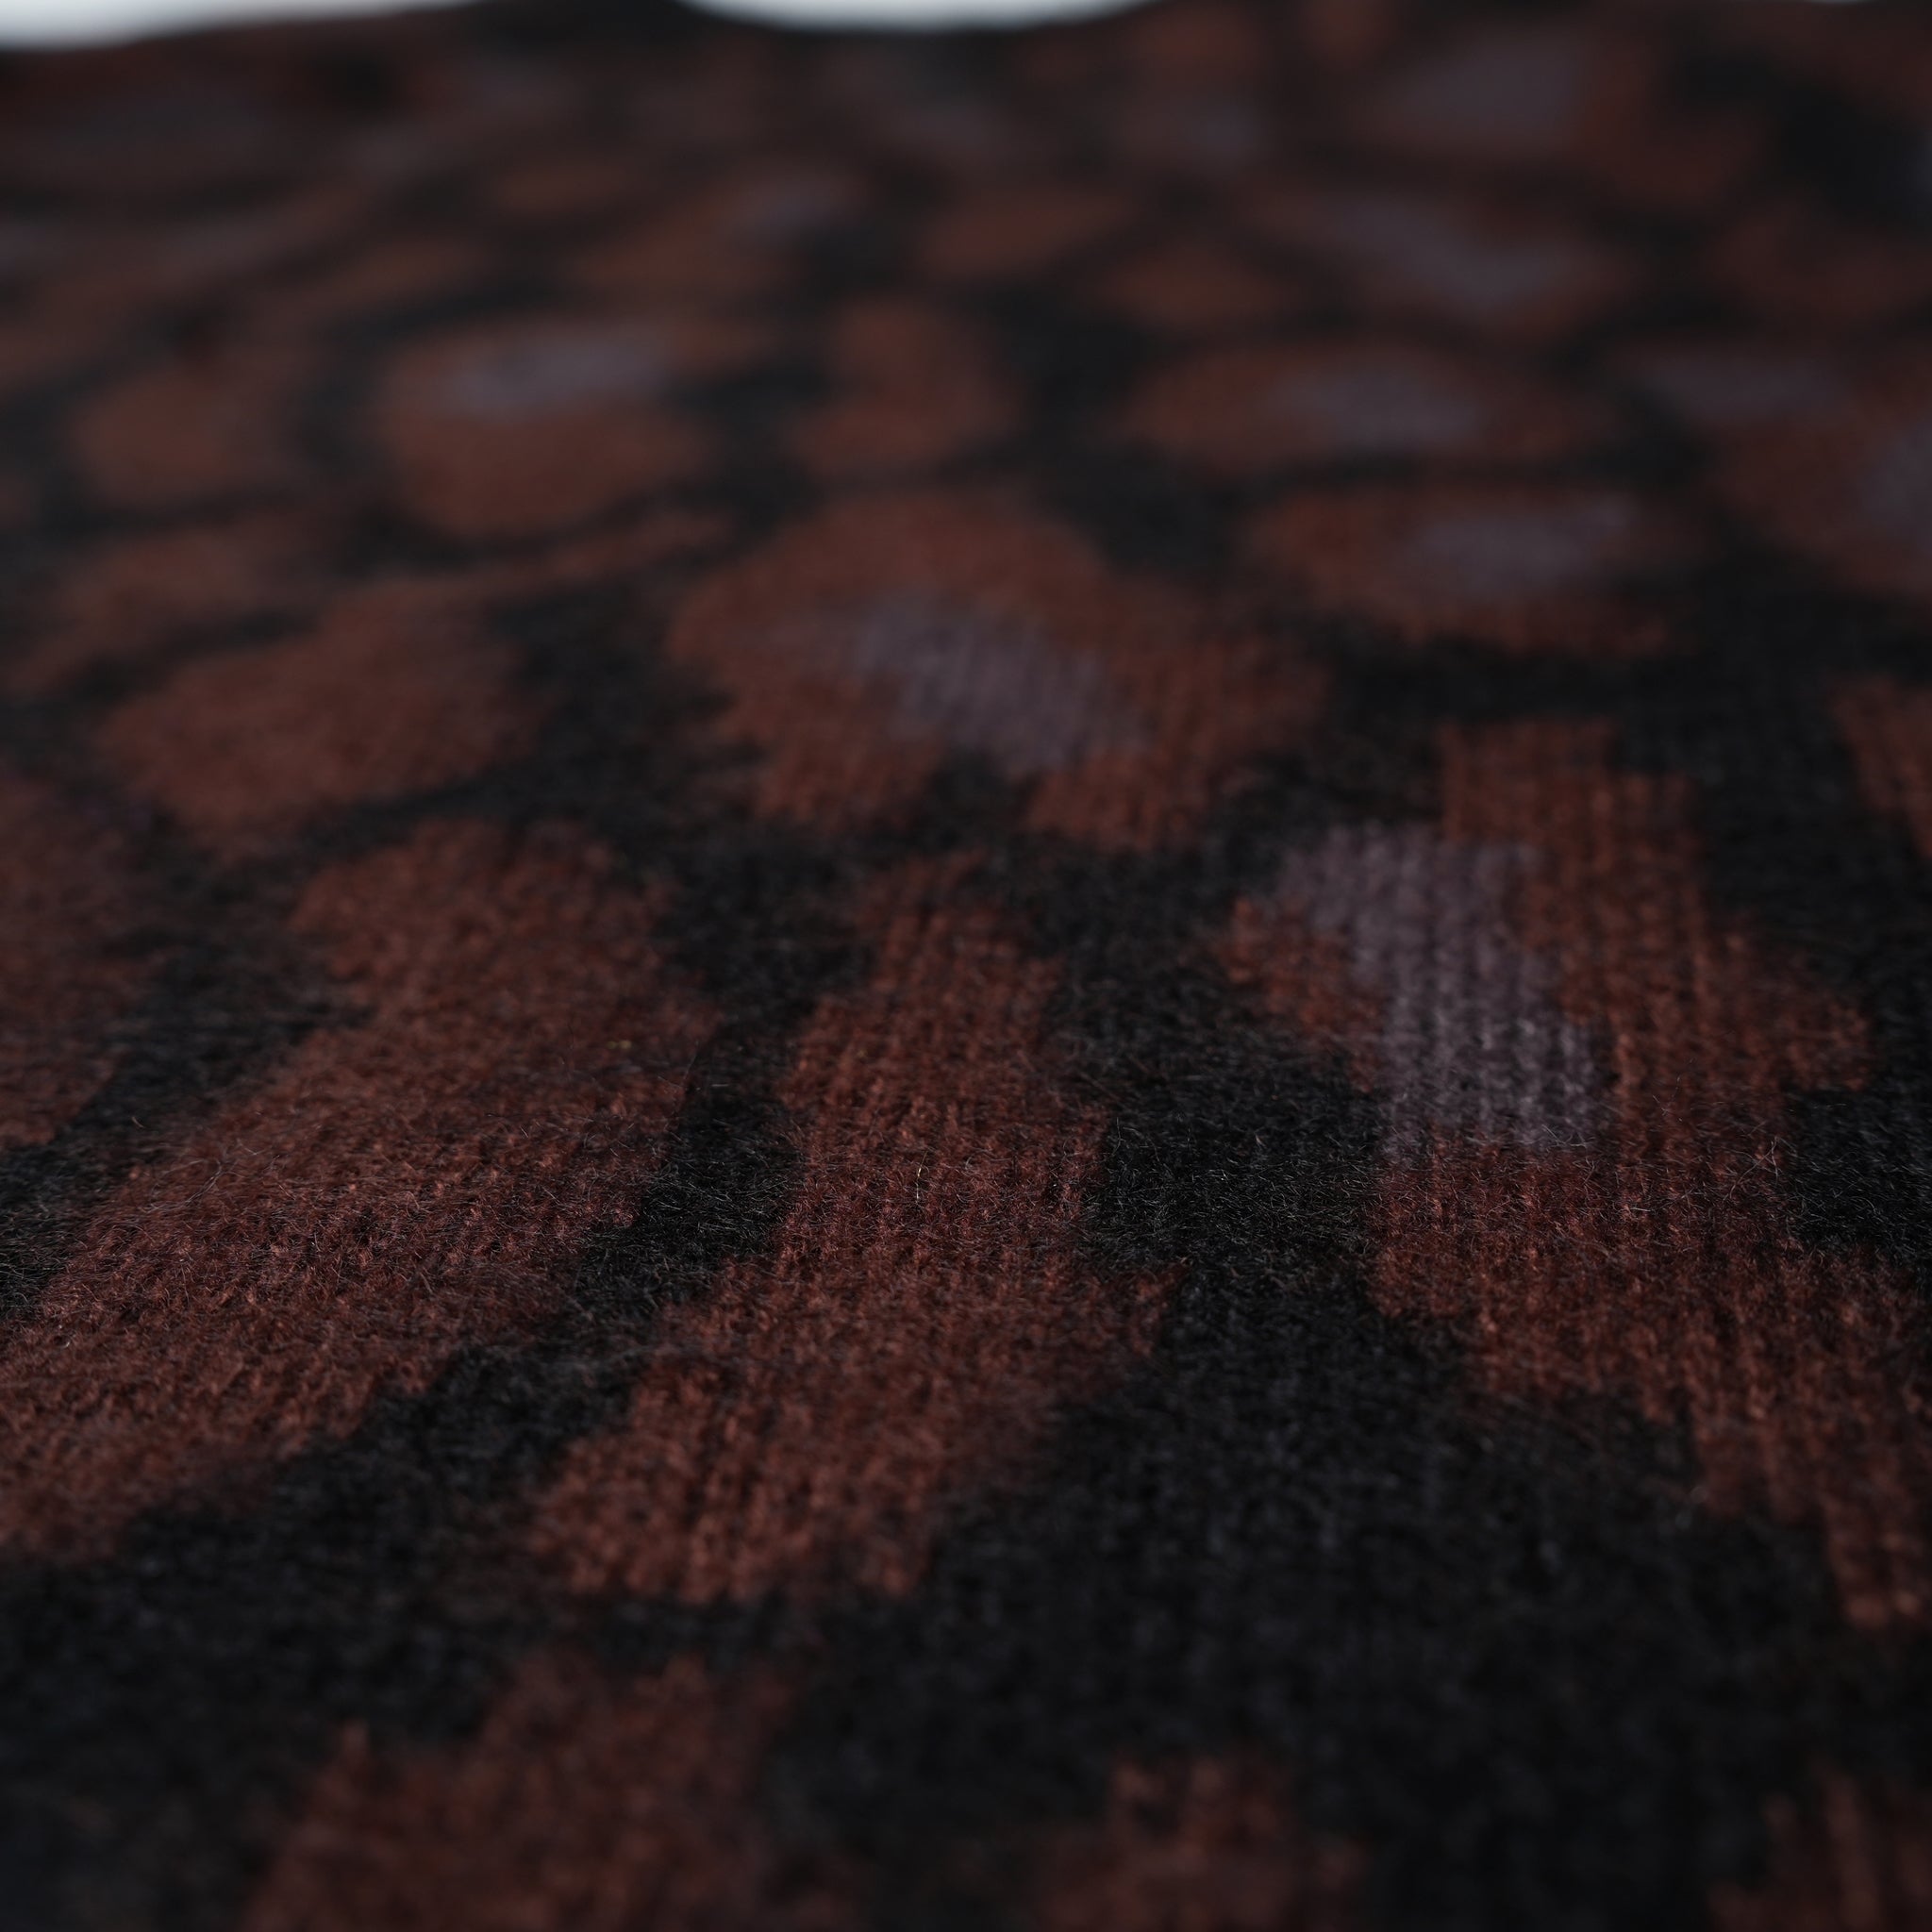 No:dm23f008a | Name:animal crew sweater | Color:Leopard【DELMAR SPORTSWEAR】